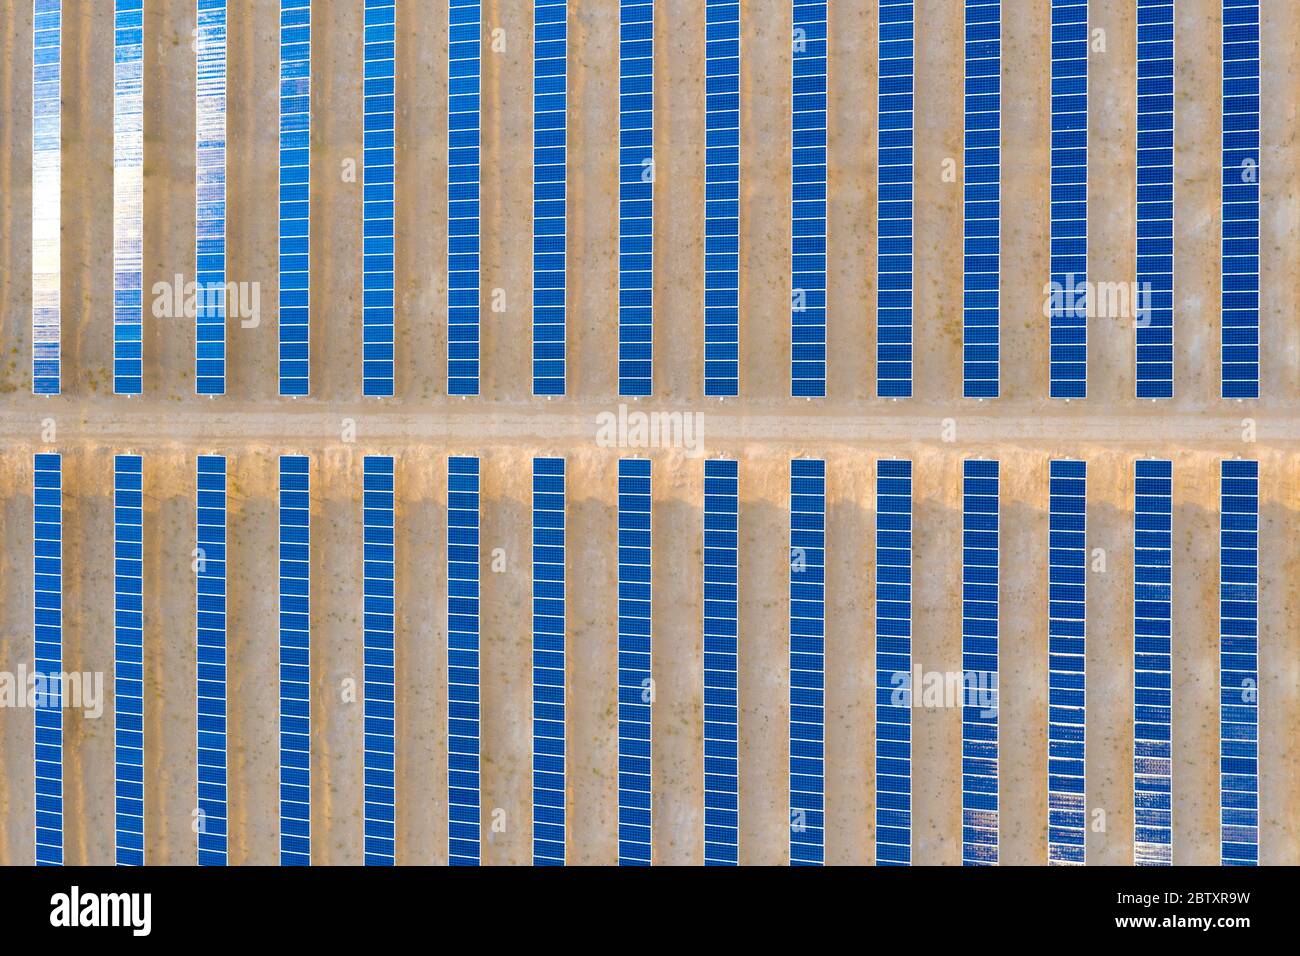 Vertikale Luftaufnahme eines Photovoltaik-Solarpaneels, der nachhaltige erneuerbare Energie in einem Wüstenkraftwerk produziert. Stockfoto